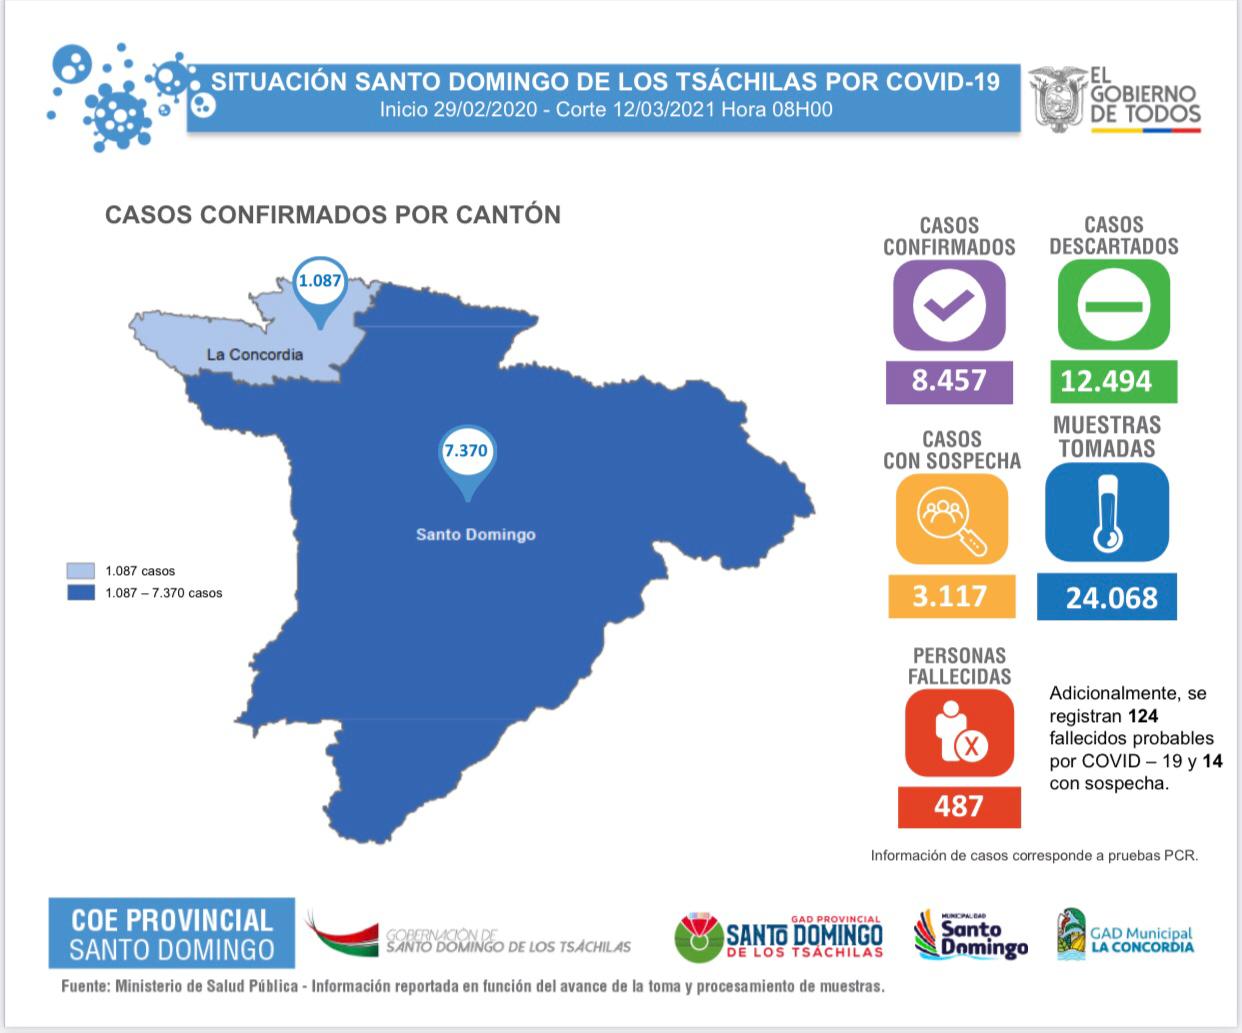 Cifras en torno a la emergencia sanitaria en Santo Domingo de los Tsáchilas, con corte al día viernes 12 de marzo del 2021. Fuente: COE Provincial SDT.